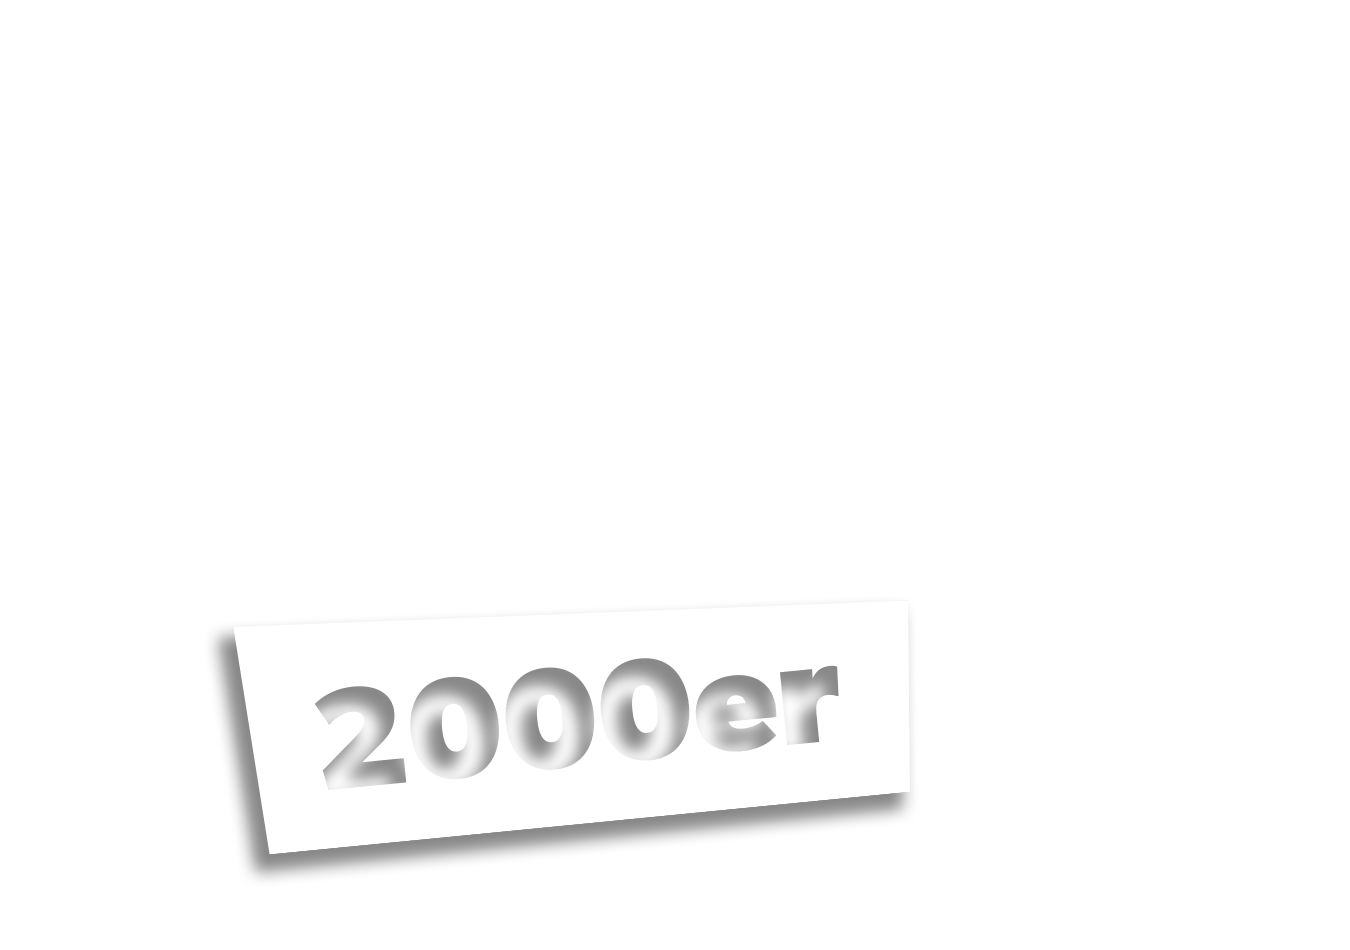 werner-damaian-2000-historie-jahreszahl